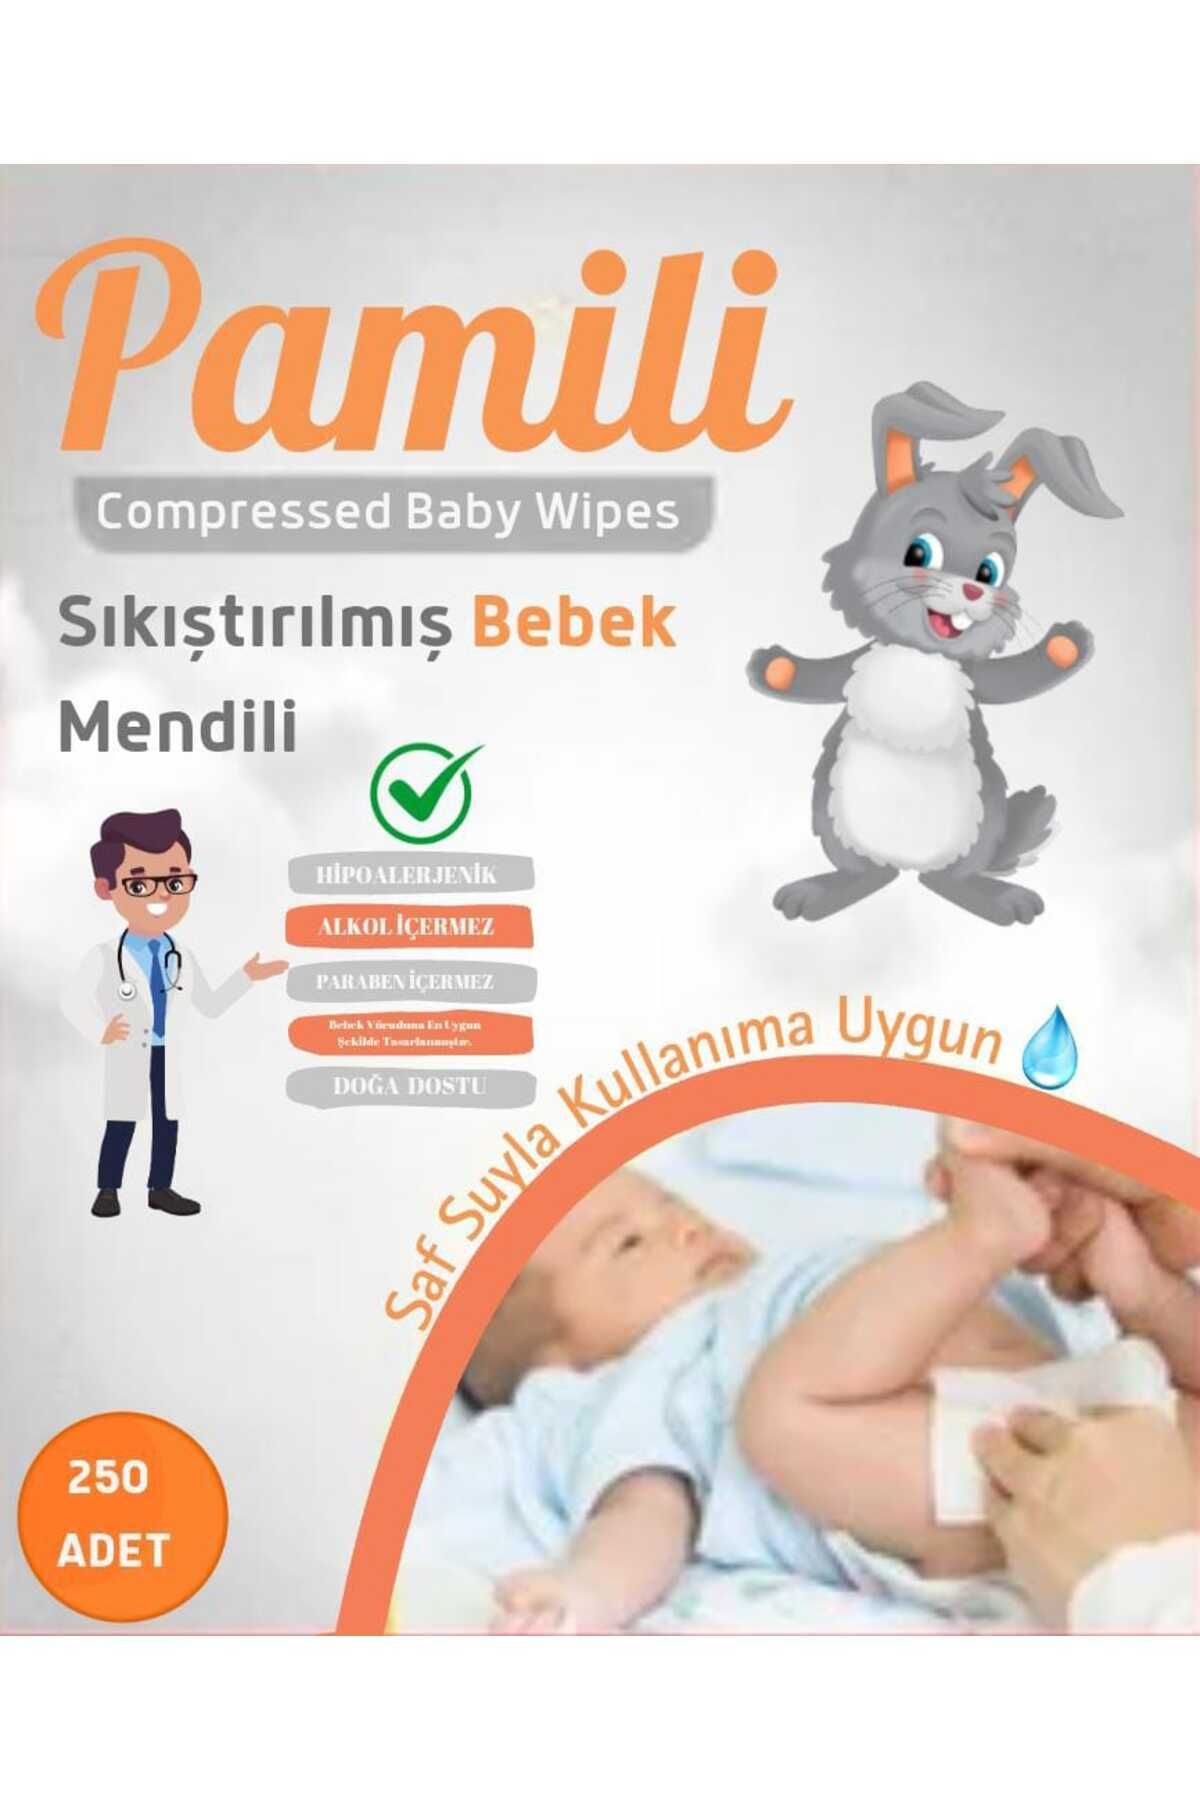 Pamili PAMİLİ Sıkıştırılmış Bebek Mendili 250 Adet